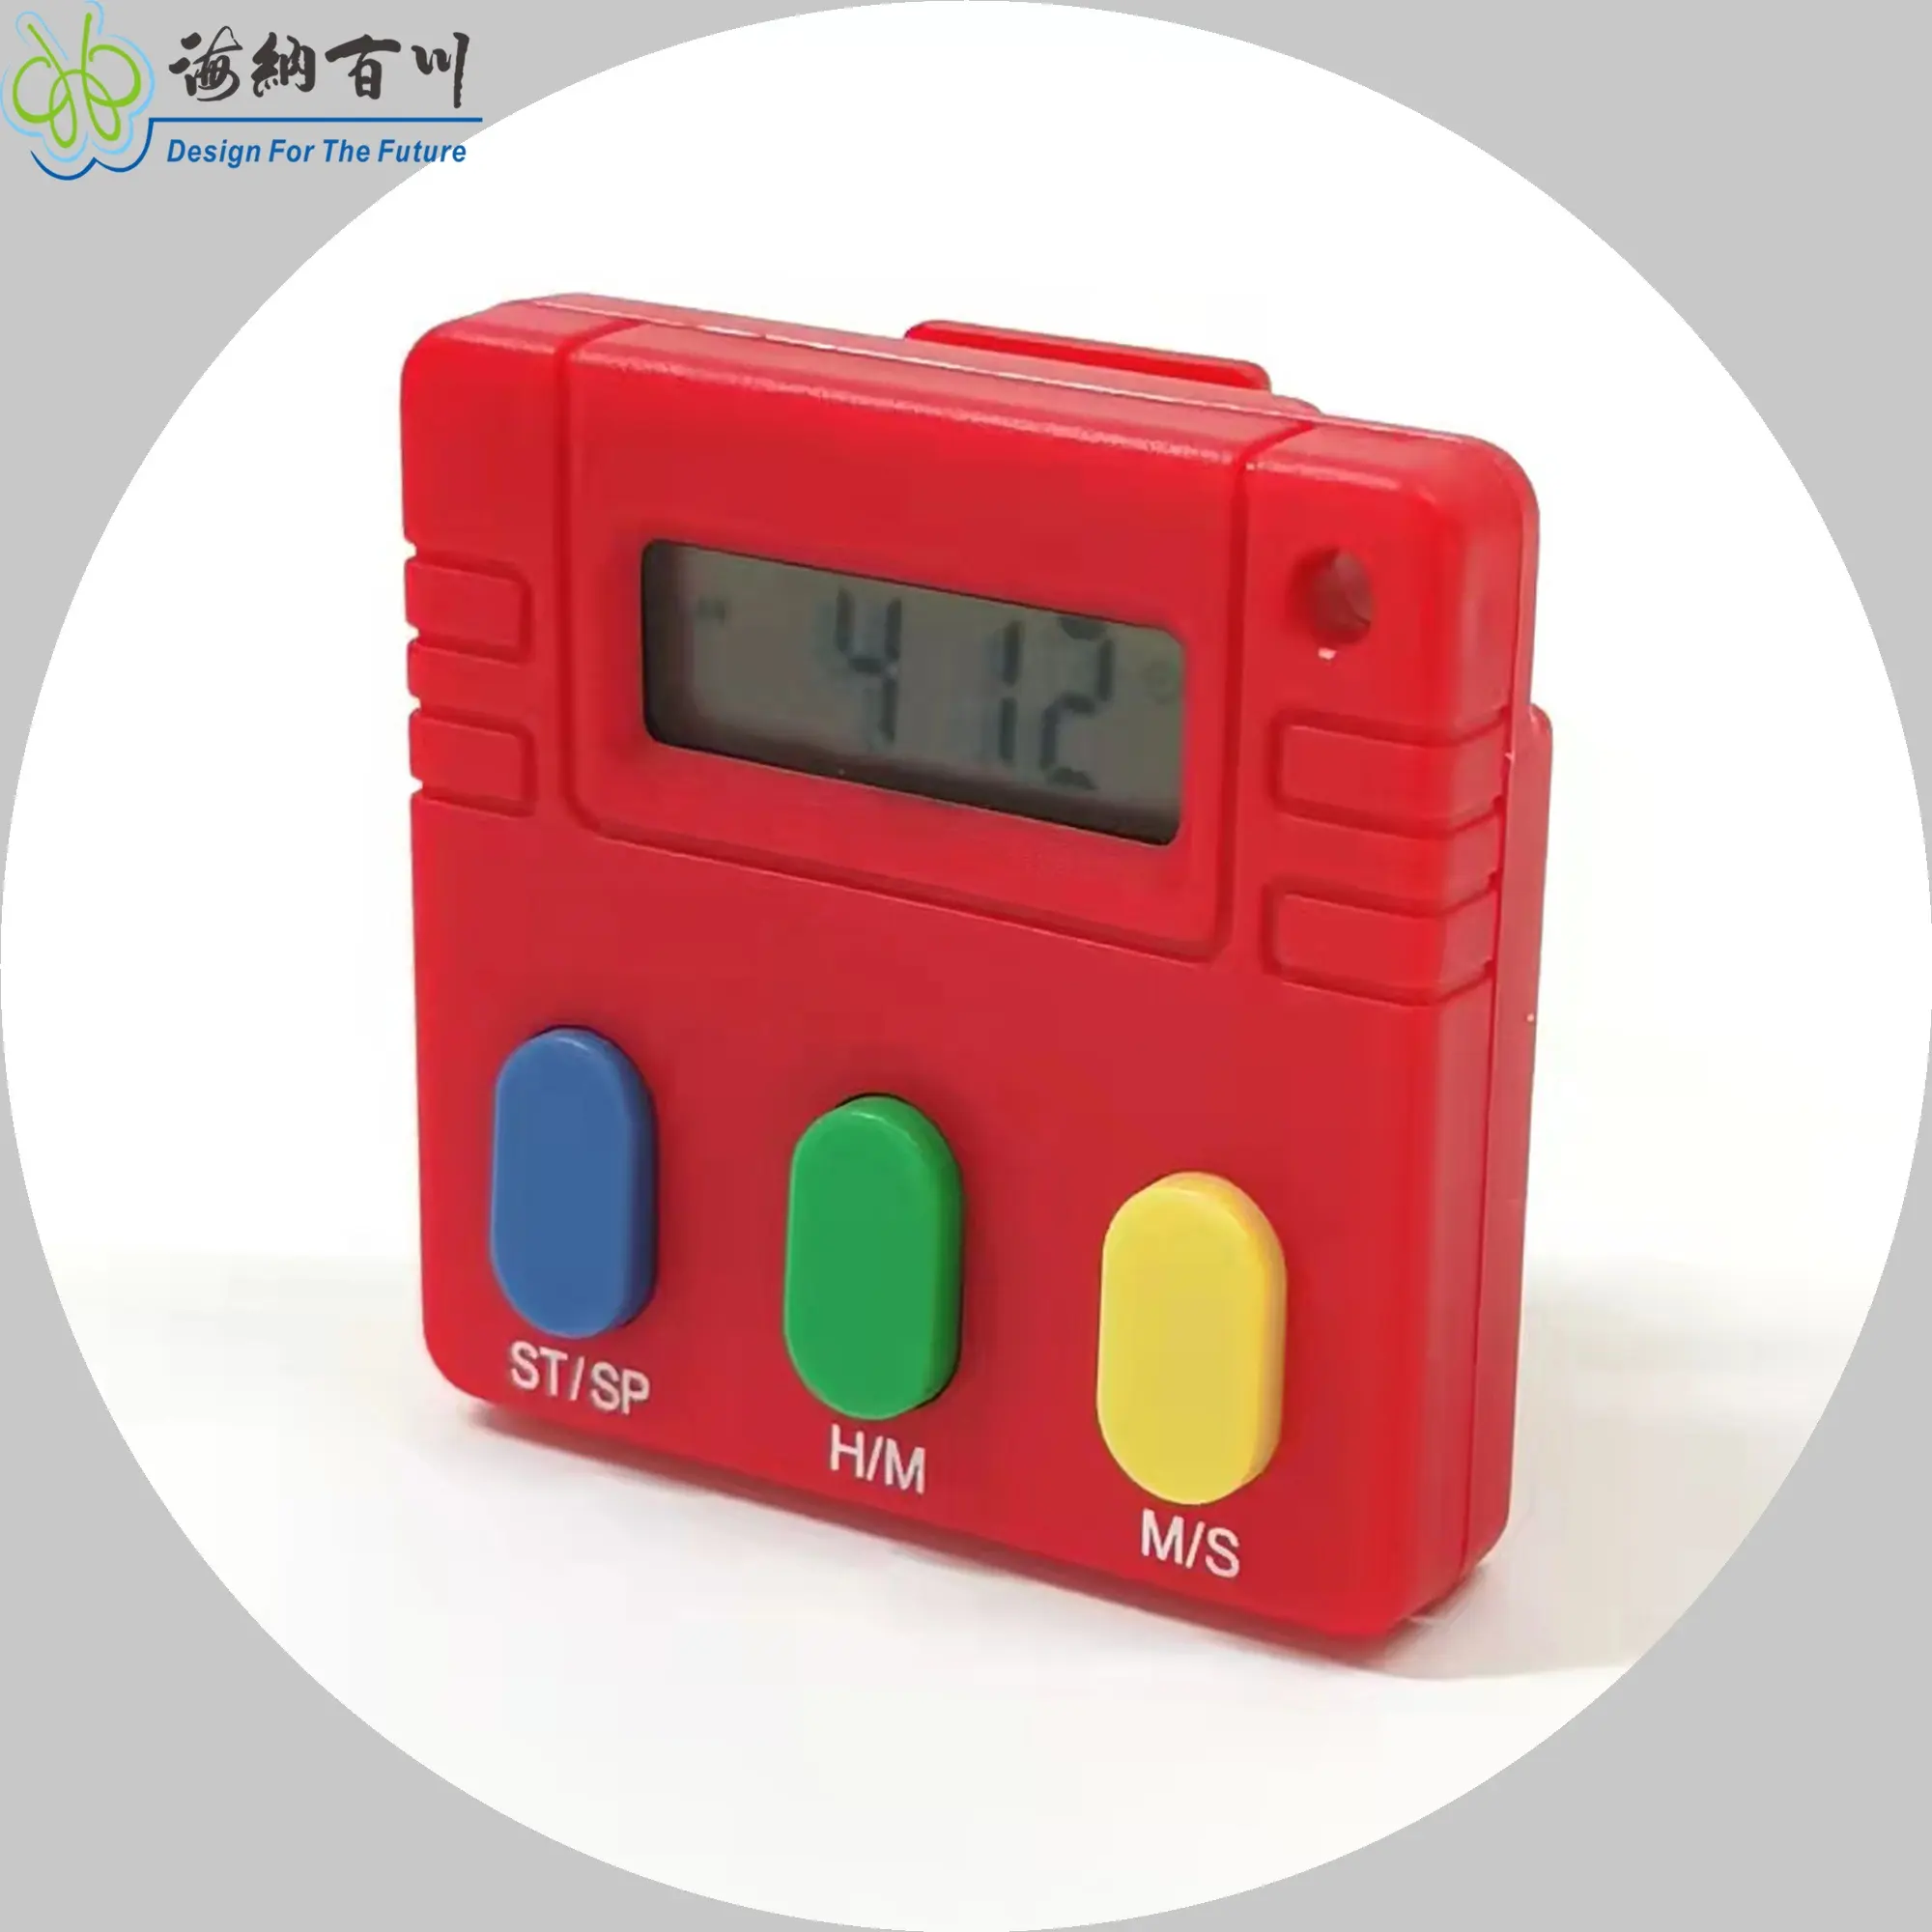 Big Keys Chronomètre numérique électronique 3 touches Écran LCD Minuterie en plastique écologique (99m59s 99h59m en option) pour une utilisation en cuisine